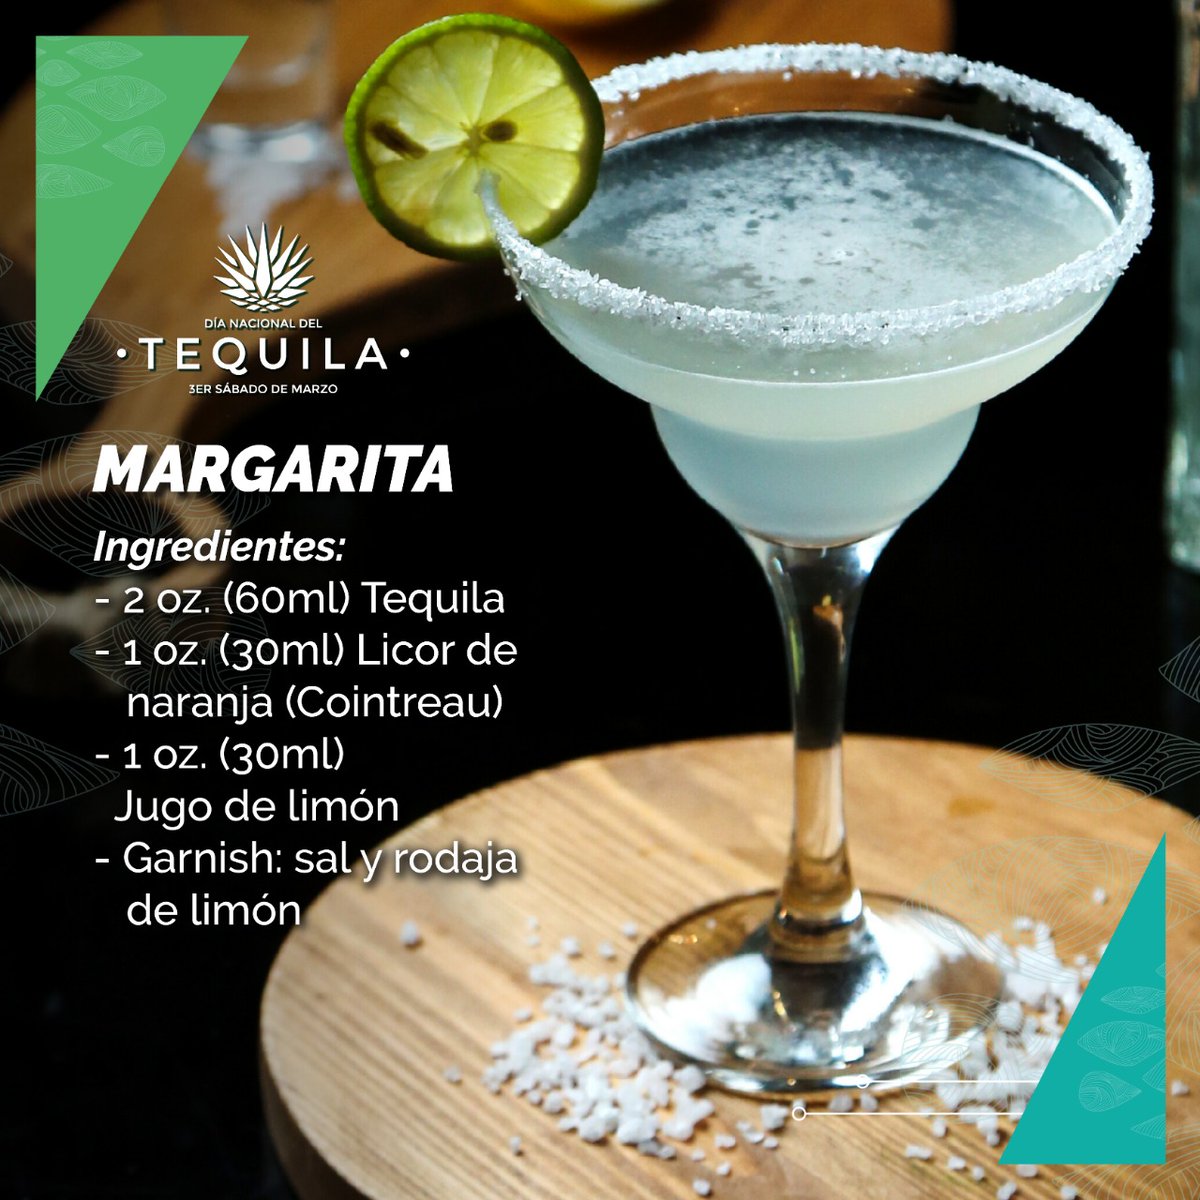 Día Nacional del Tequila on Twitter: "Hoy podrías preparar en la receta del coctel más consumido en el mundo, la Margarita ¡Disfrútalo! MARGARITA 2 oz. (60ml) Tequila 1 oz. (30ml) Licor